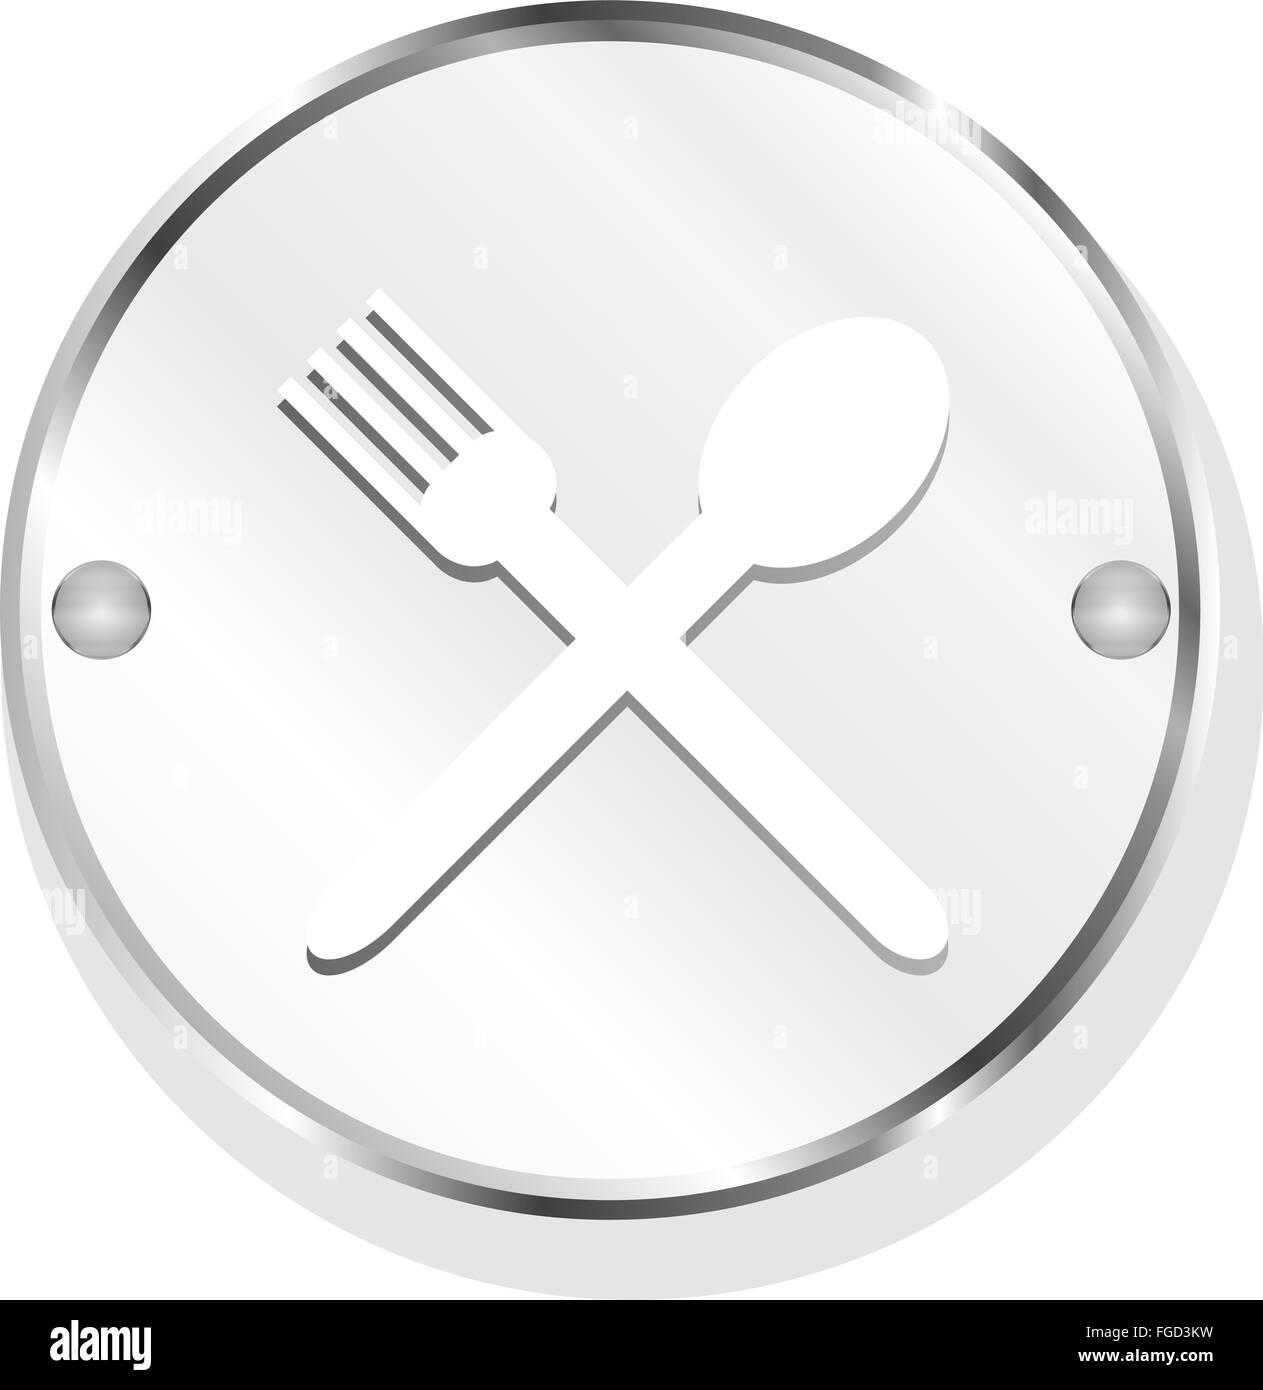 Pulsanti web icona alimentare: cucchiaio e forchetta segno Foto Stock